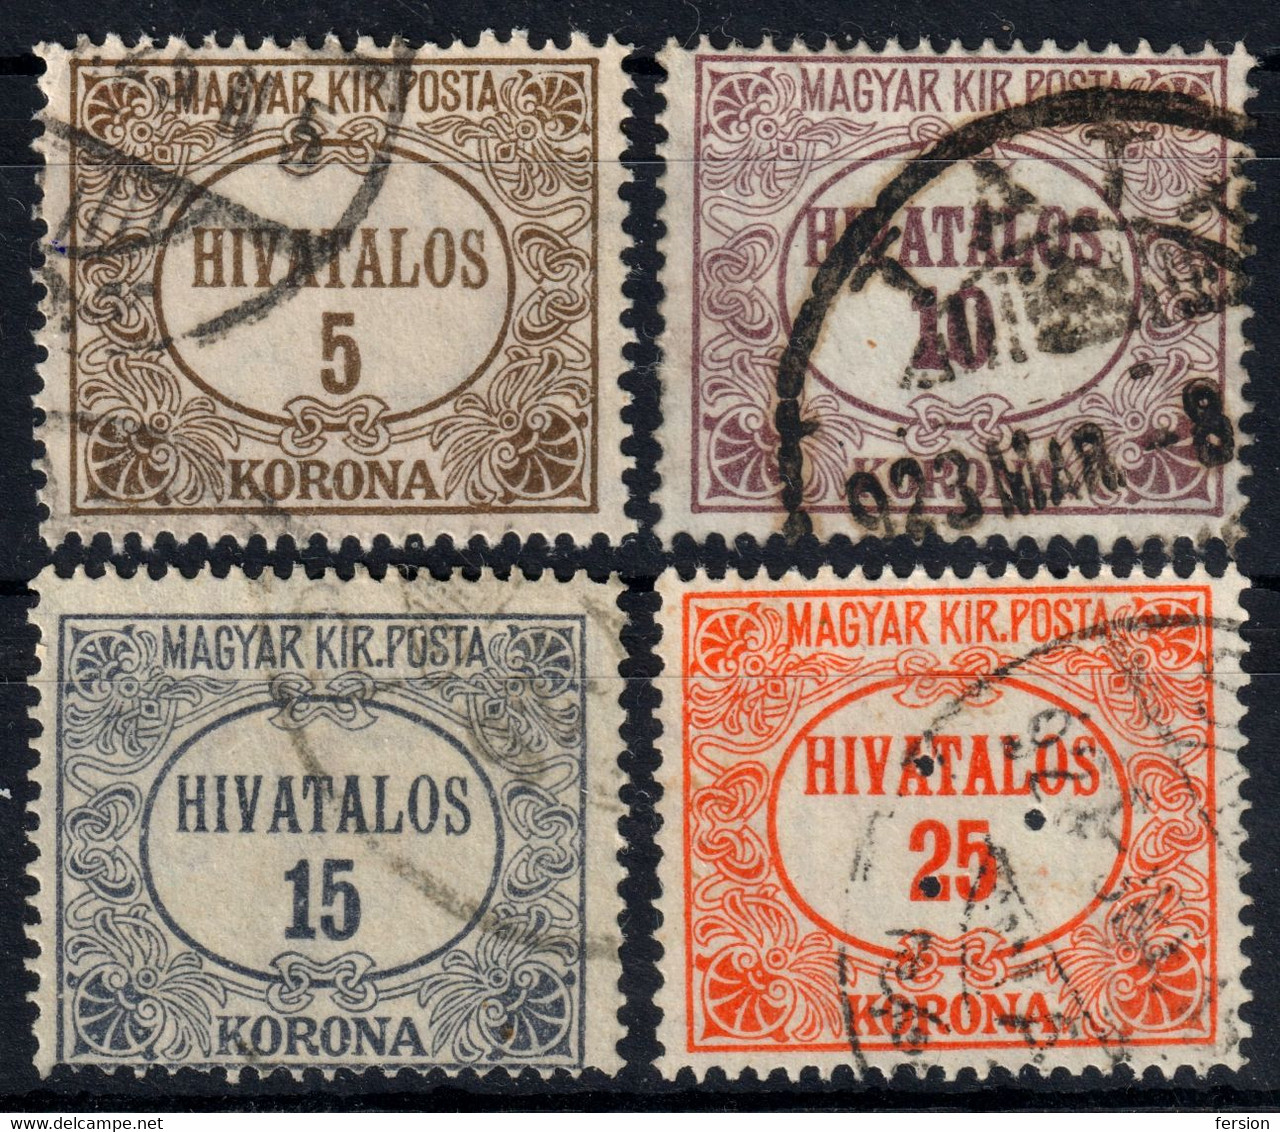 Official Dienstmarke 1922  Hungary - Used - Dienstzegels